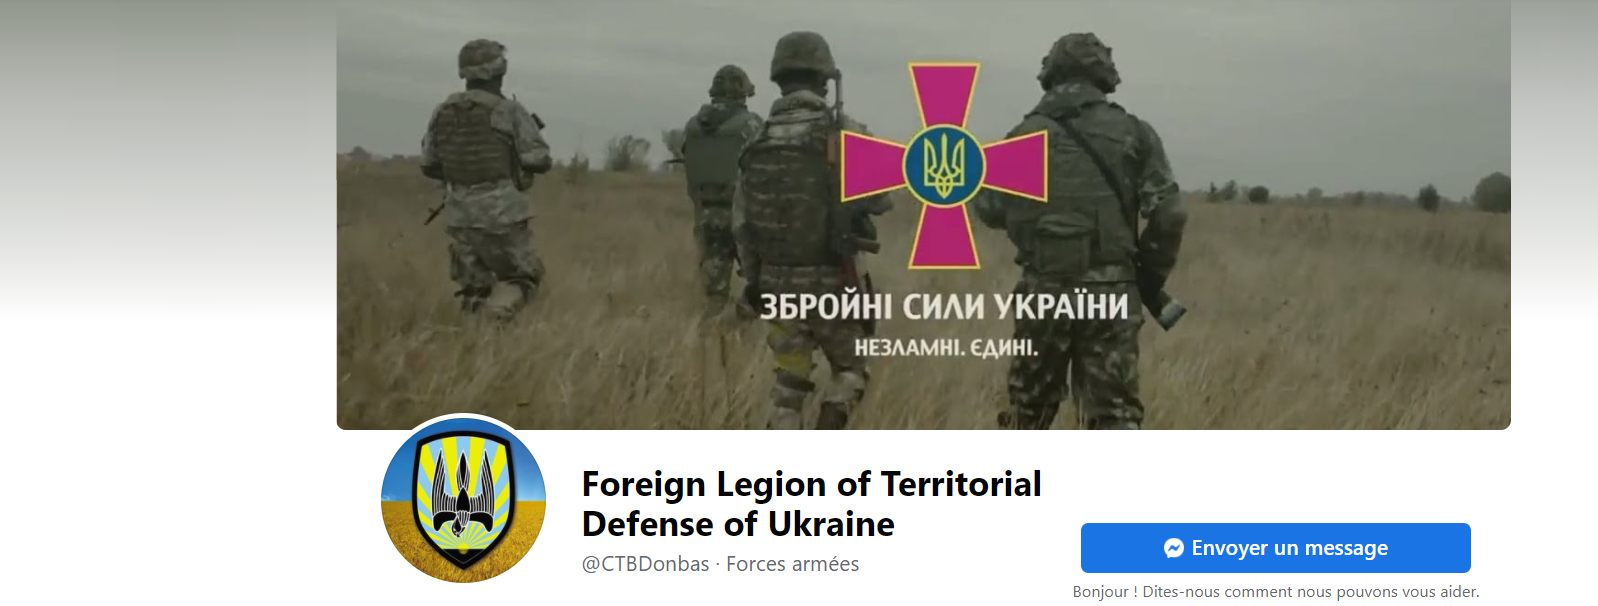 Recrutement de volontaires pour la Légion internationale de défense territoriale d’Ukraine : un engagement en question.